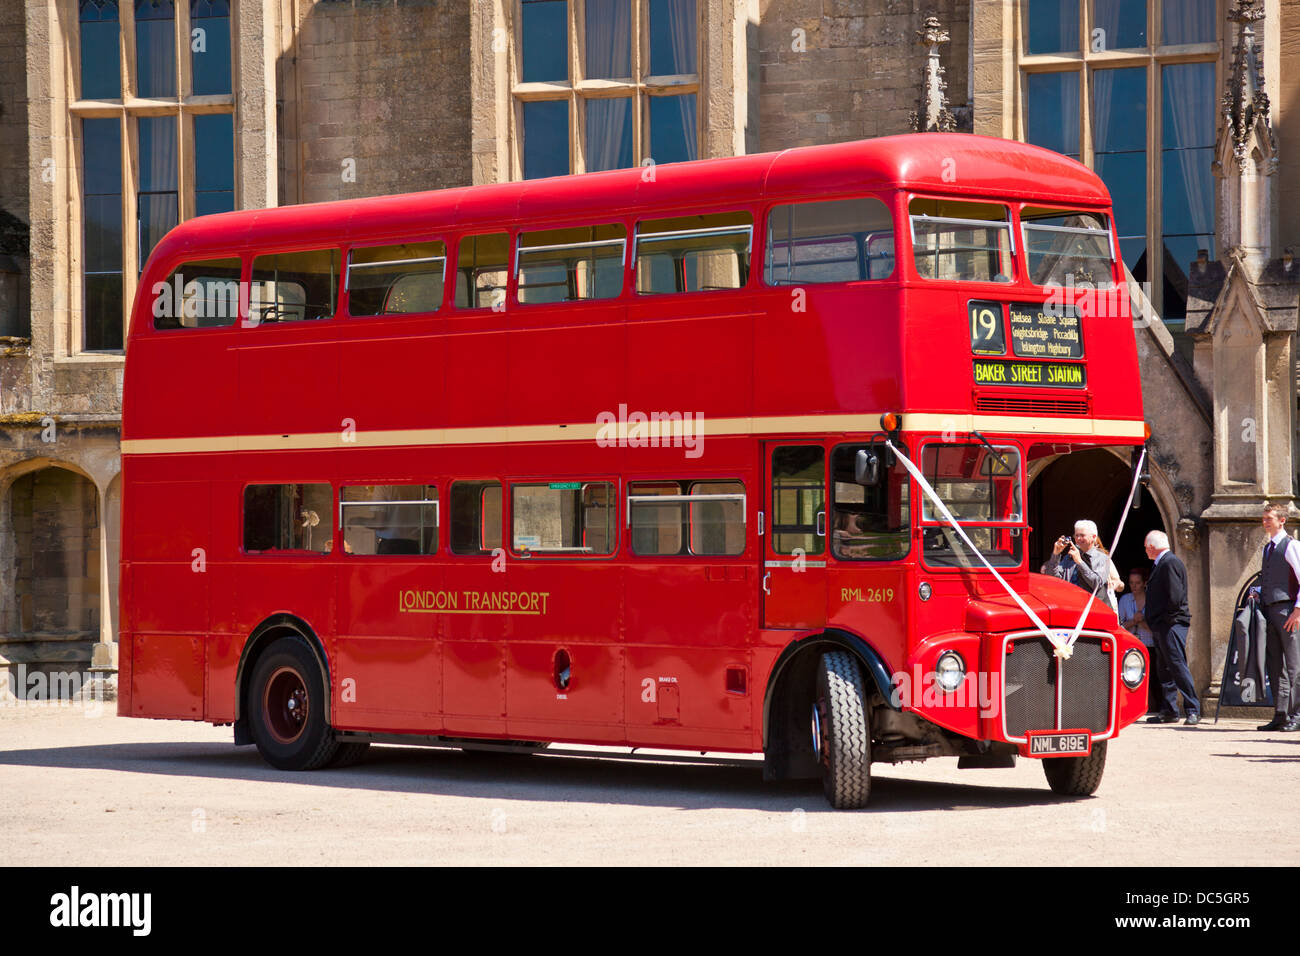 Bus de Londres pour un mariage - bus rouge de Londres a routemaster à l'extérieur de Newstead Abbey Historic House Ravenshead Newstead Notinghamshire Angleterre GB Europe Banque D'Images